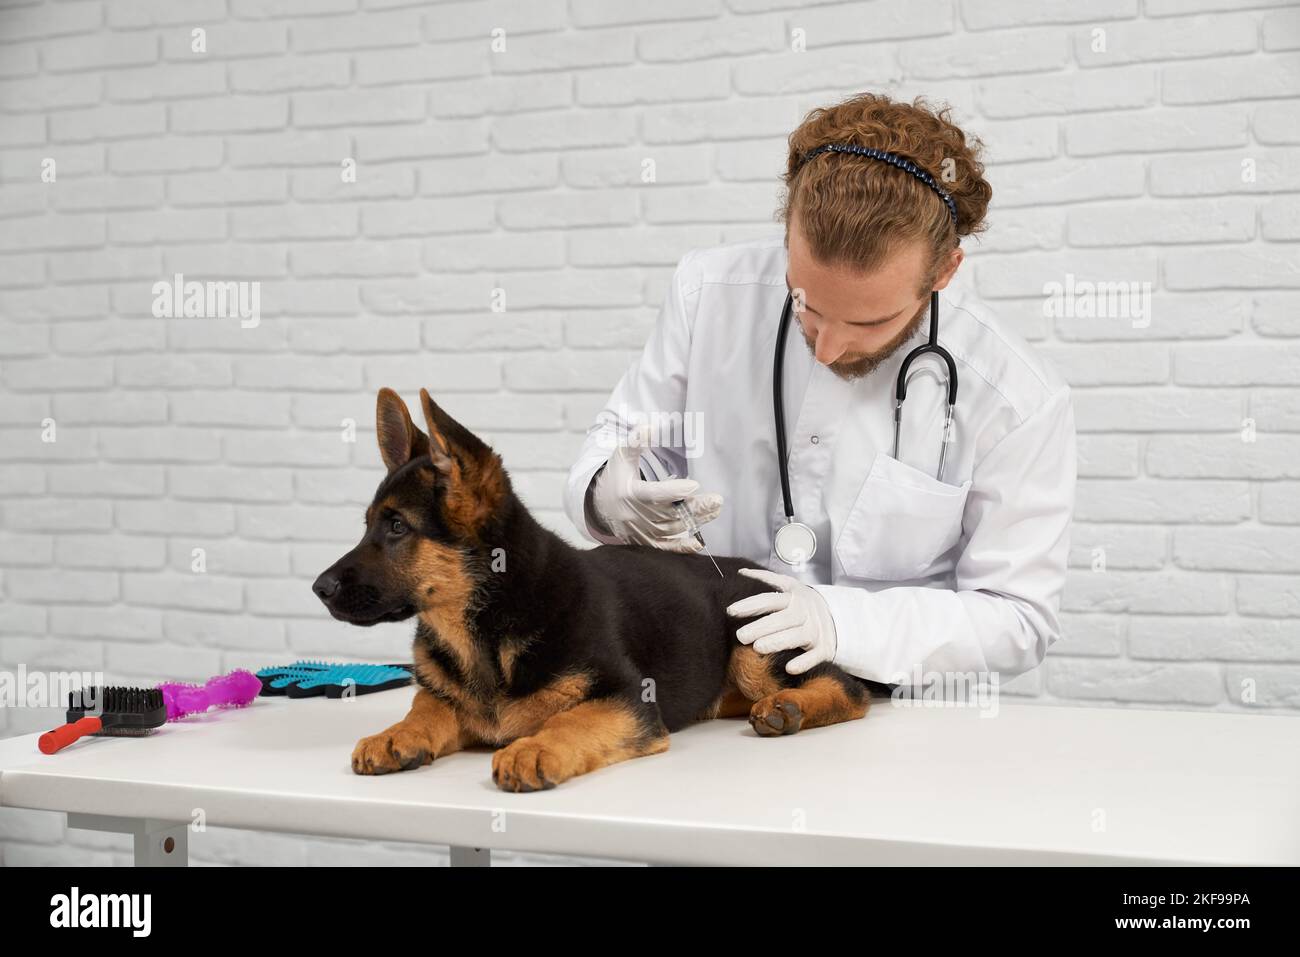 Portrait d'un vétérinaire à poil équitable et d'un patient brun et noir. Animal médecin tenant fermement la hanche de chien et trouvant un endroit pour l'injection. La visite au vétérinaire arrive à son terme avec succès. Banque D'Images